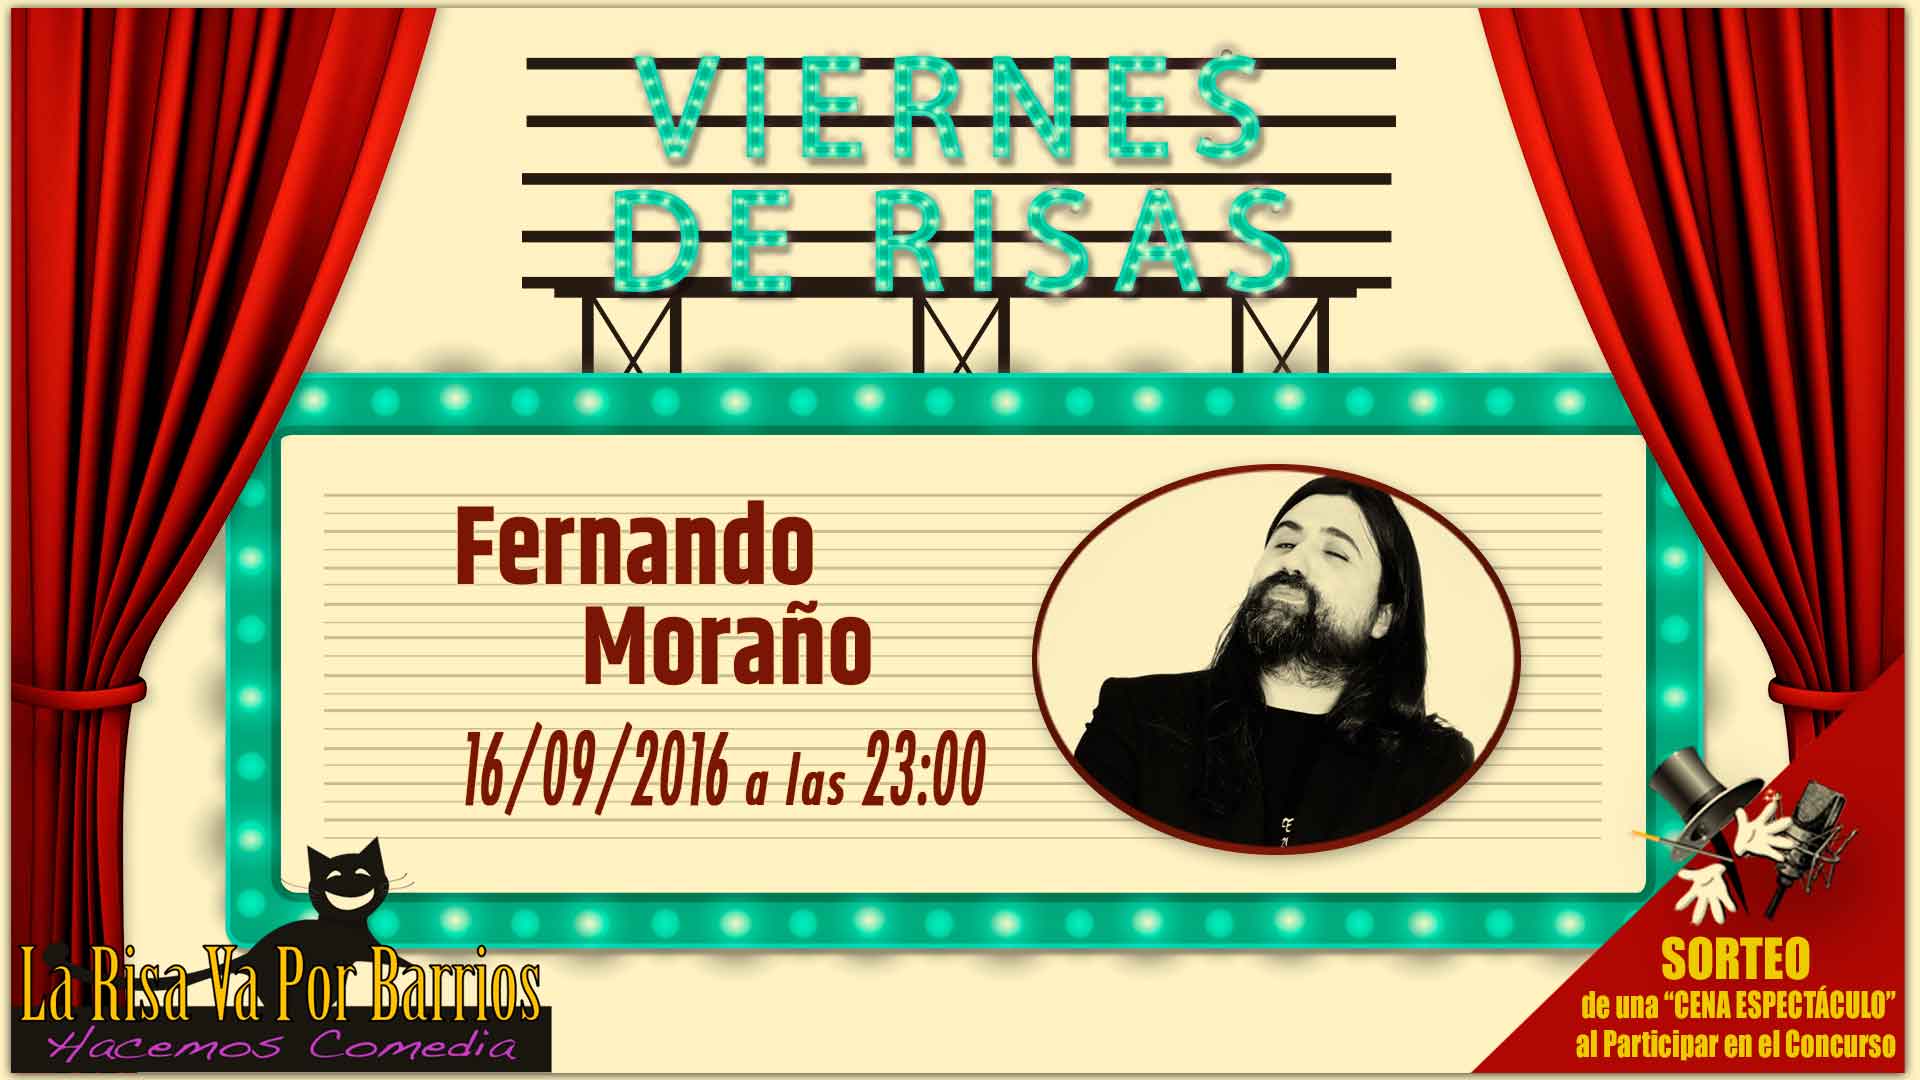 Ven a los Viernes de risas a disfrutar de Fernando Moraño la noche del 16 de septiembre a partir de las 23:00